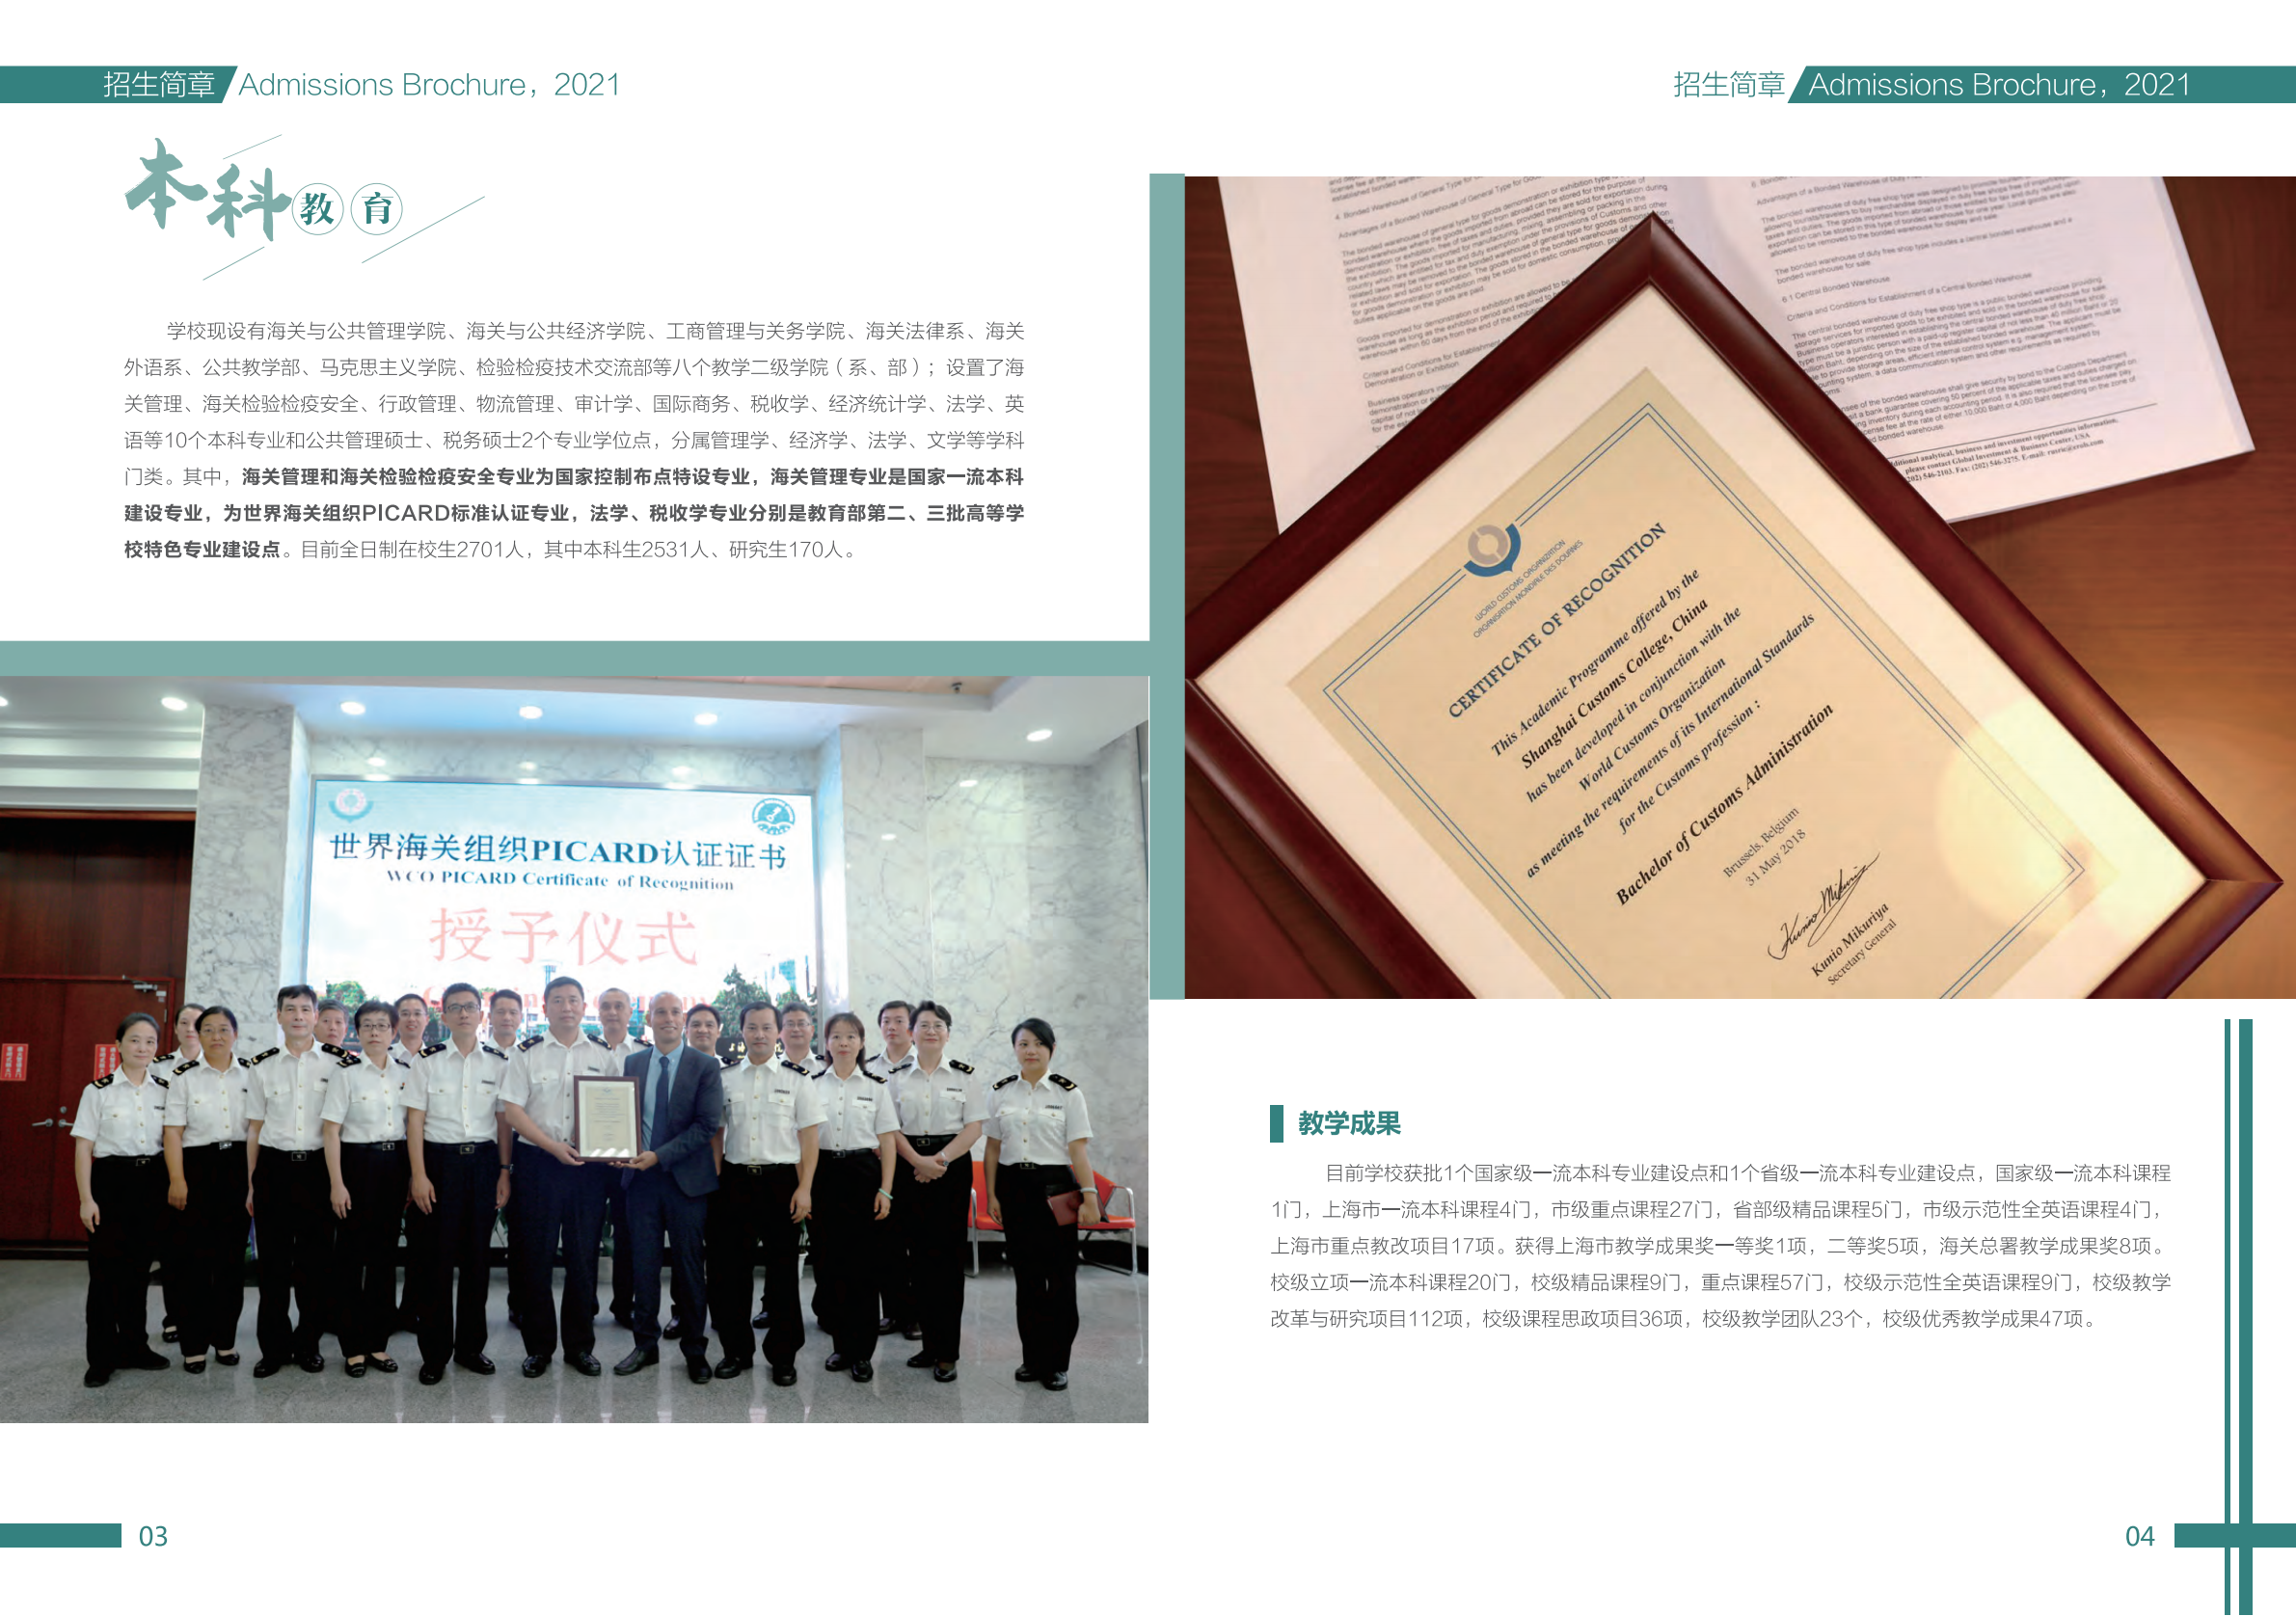 上海海关学院2021年本科招生简章